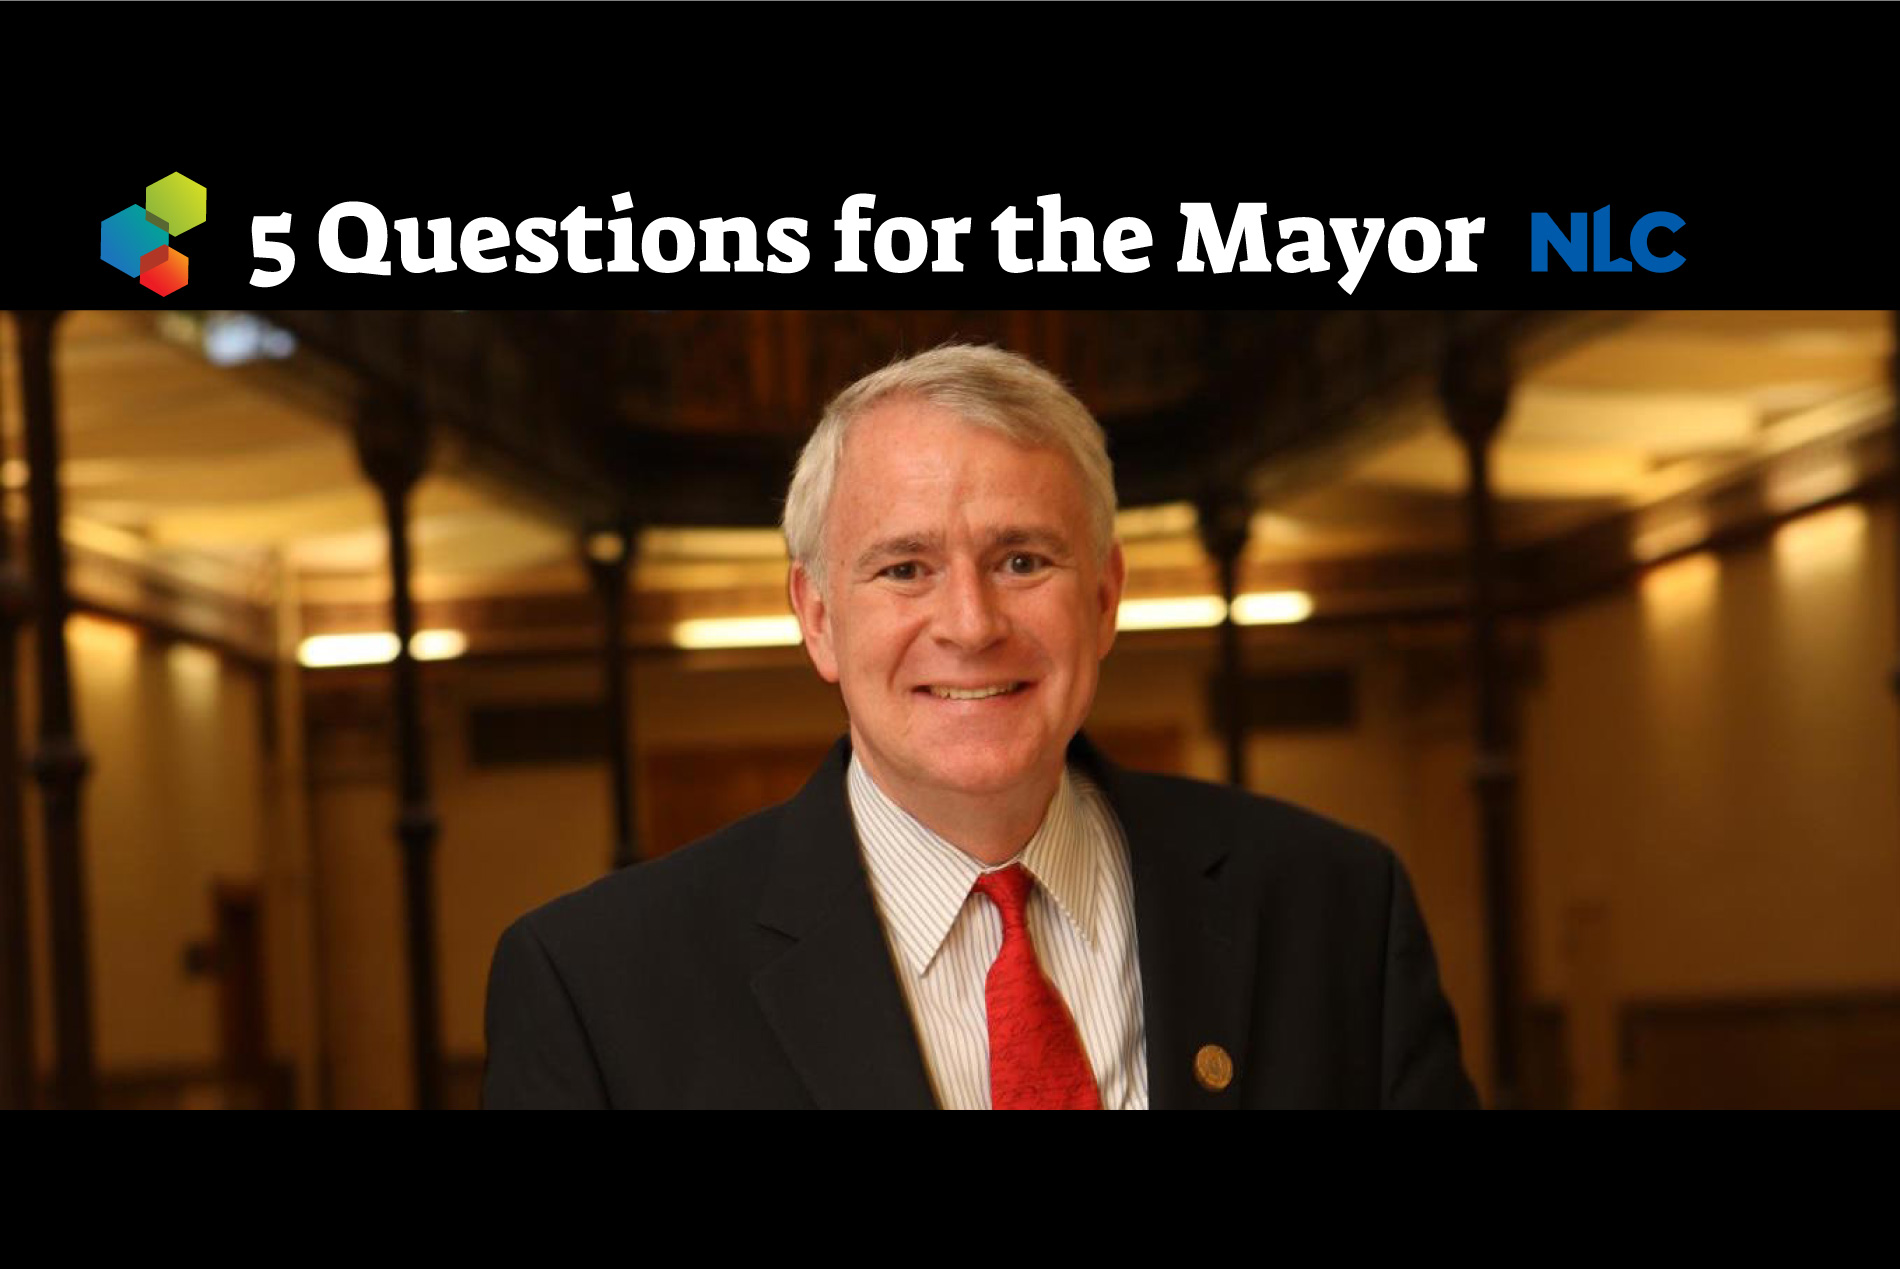 Milwaukee mayor Tom Barrett